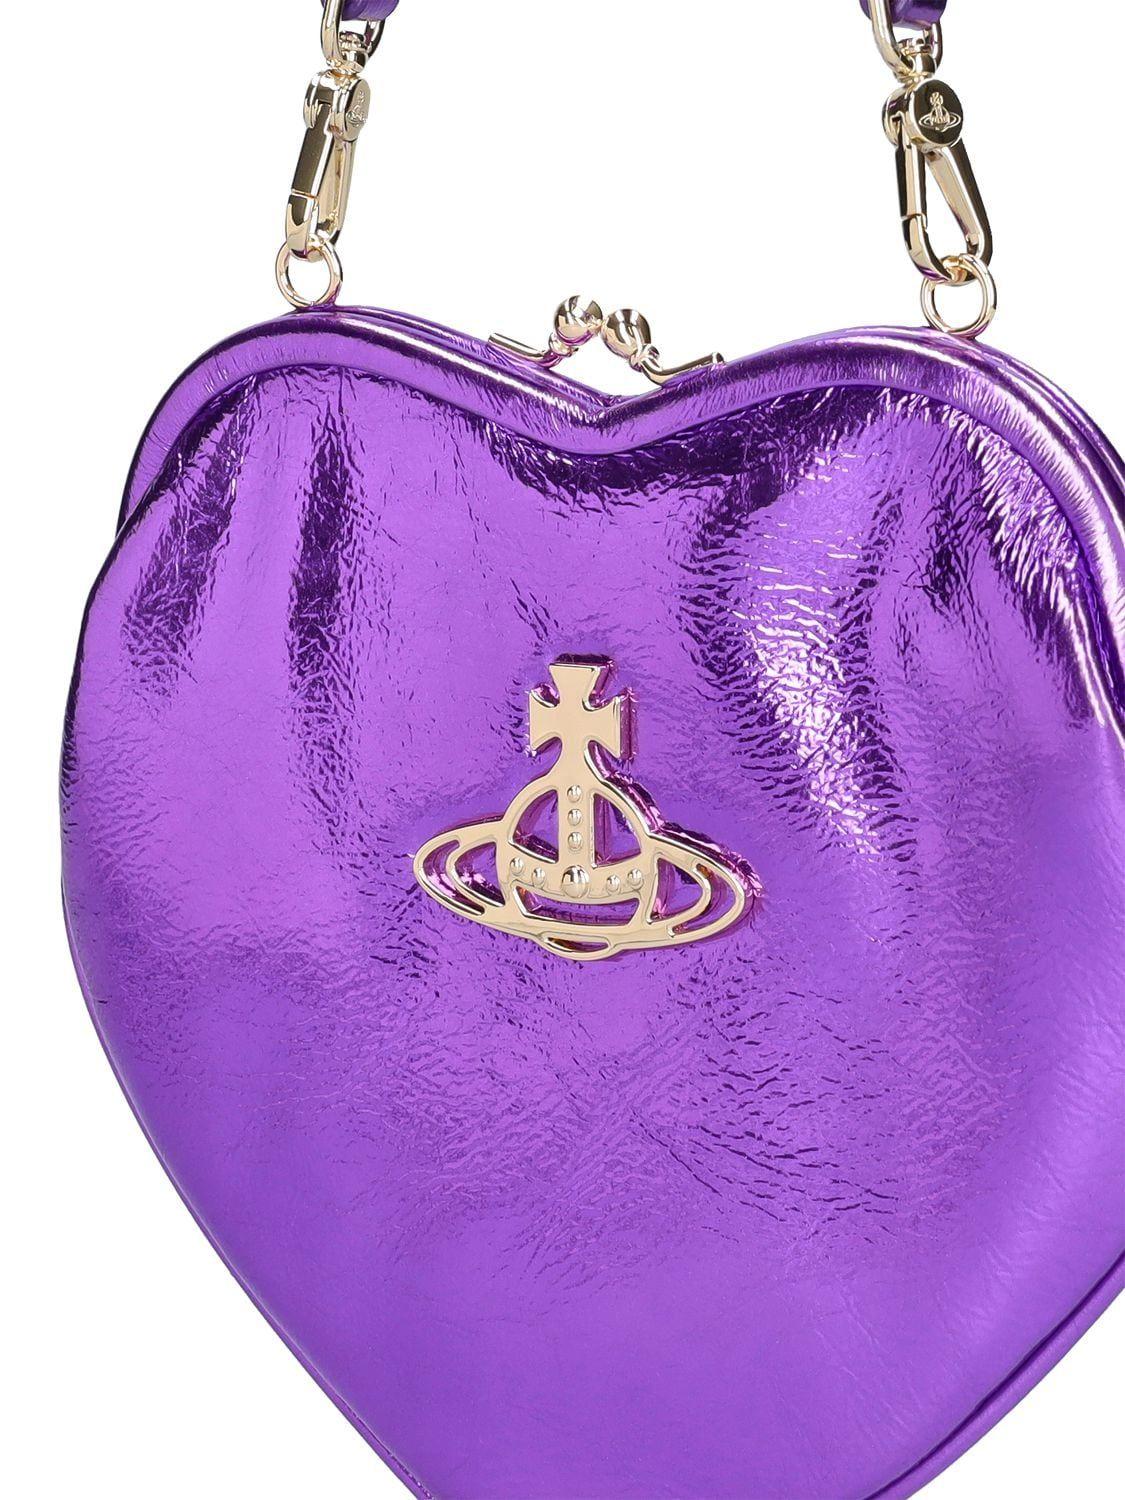 Vivienne Westwood 'Belle' handbag, Women's Bags